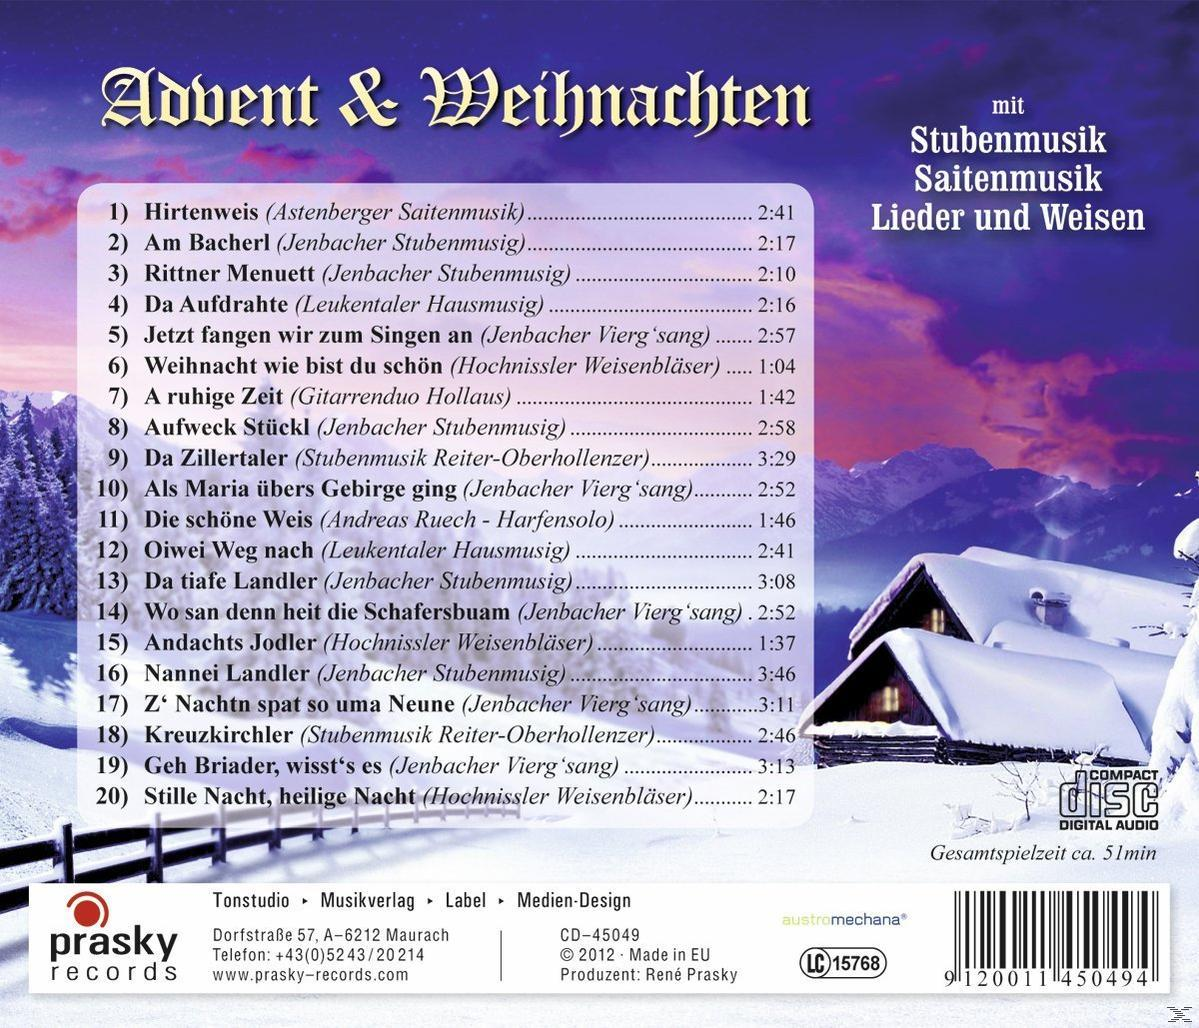 Weihnachten Mit & - Lieder Saitenmusik, Stubenmusik, Und - (CD) VARIOUS Advent Weisen